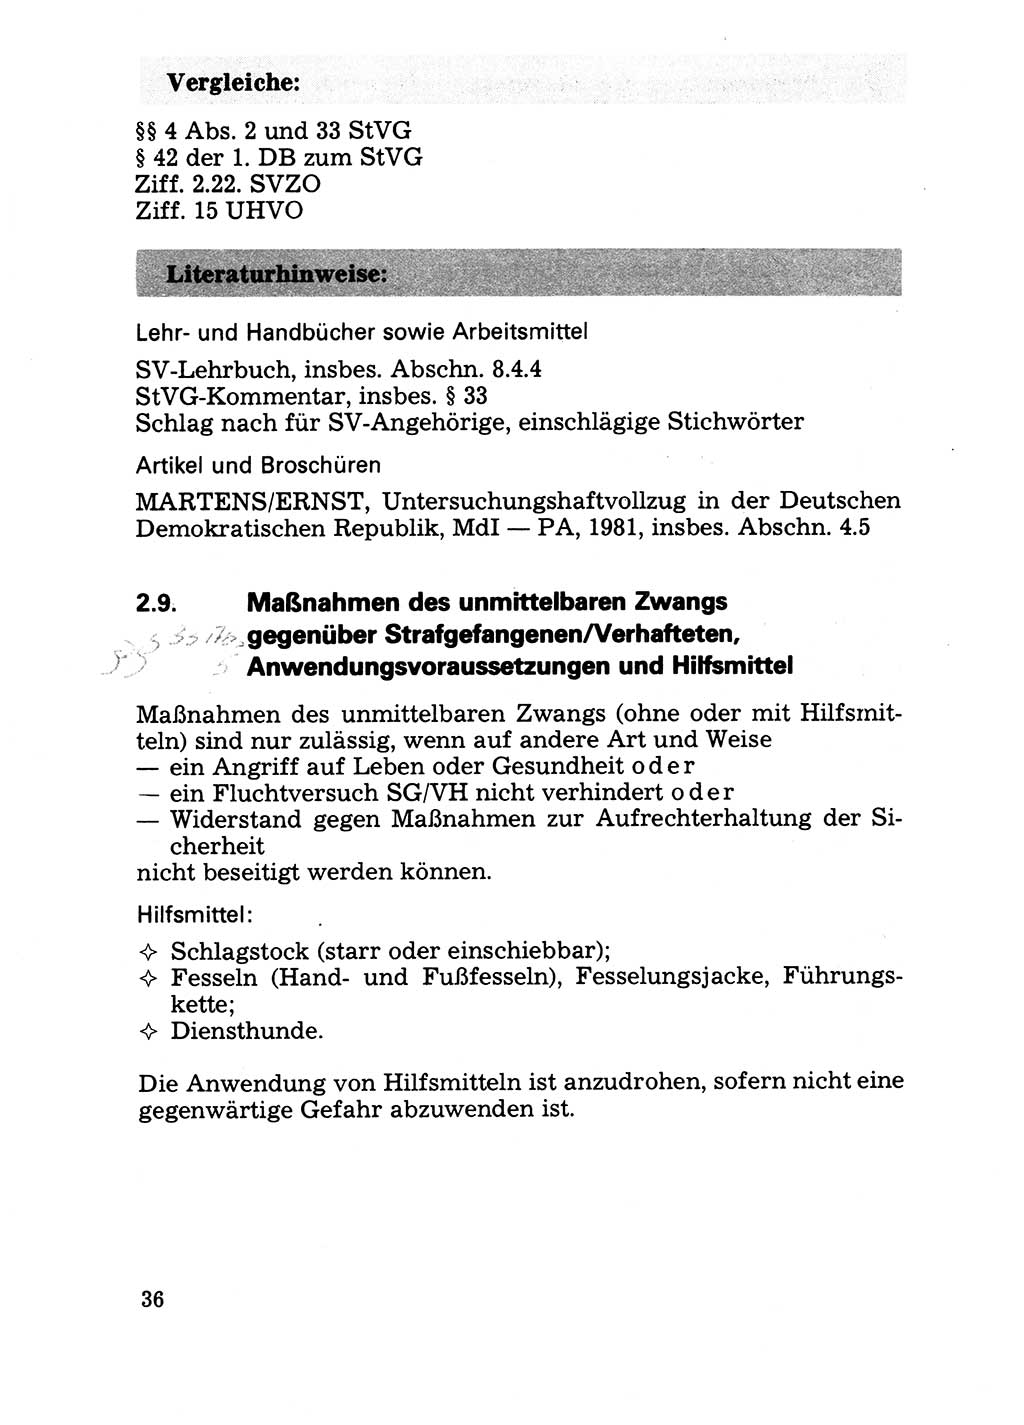 Handbuch für operative Dienste, Abteilung Strafvollzug (SV) [Ministerium des Innern (MdI) Deutsche Demokratische Republik (DDR)] 1981, Seite 36 (Hb. op. D. Abt. SV MdI DDR 1981, S. 36)